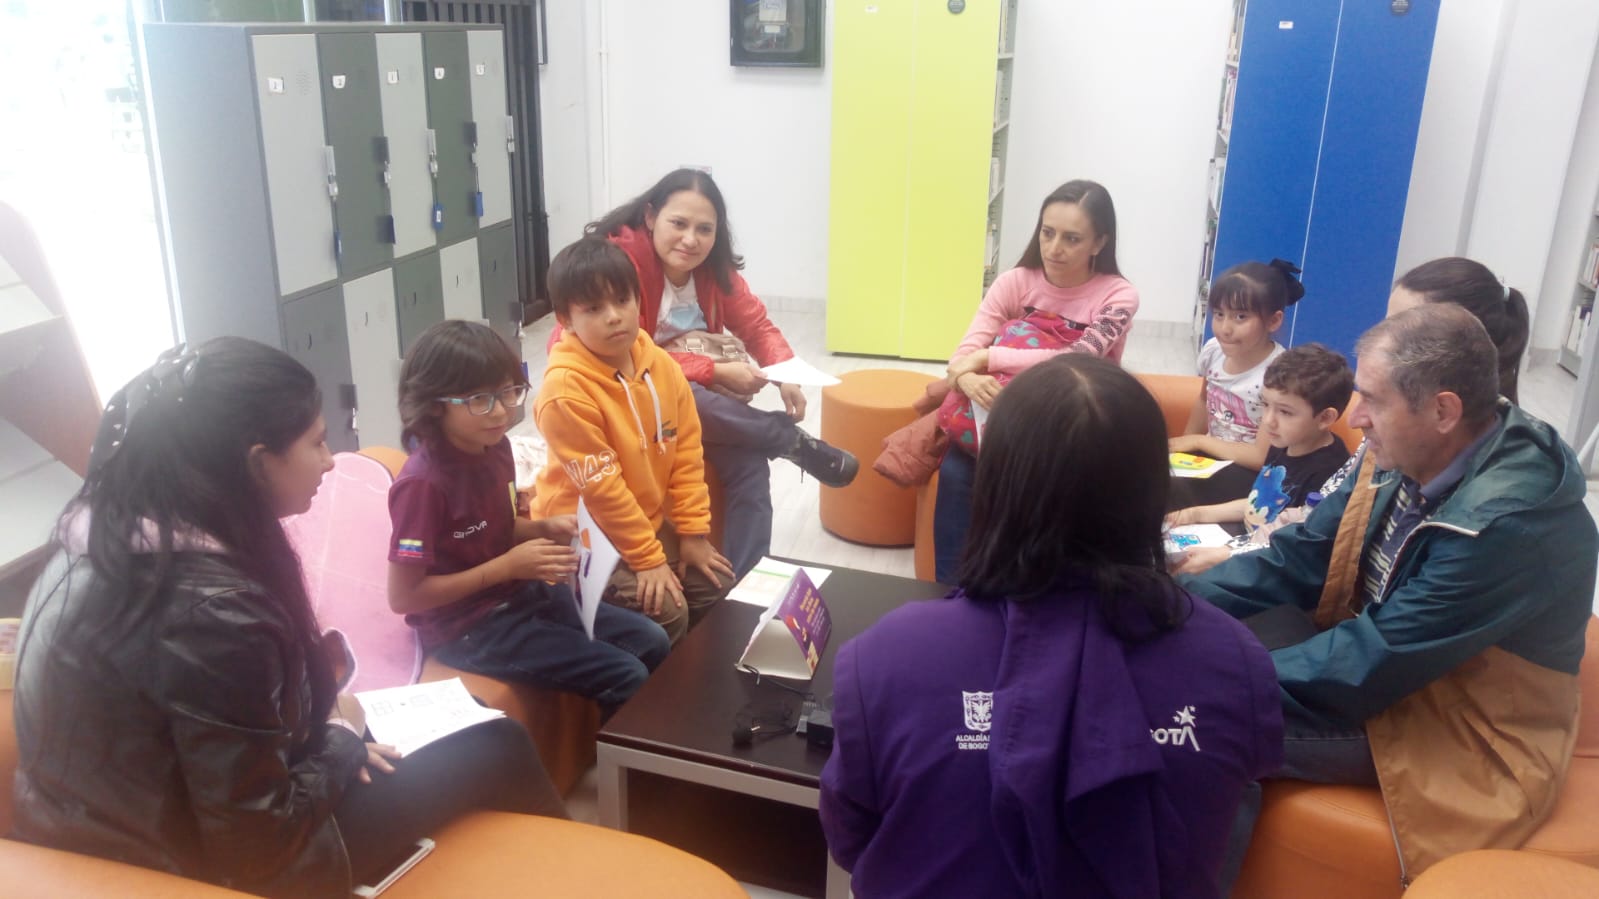 niñas, niños y padres conversando en compañía de una docente que guía la actividad.